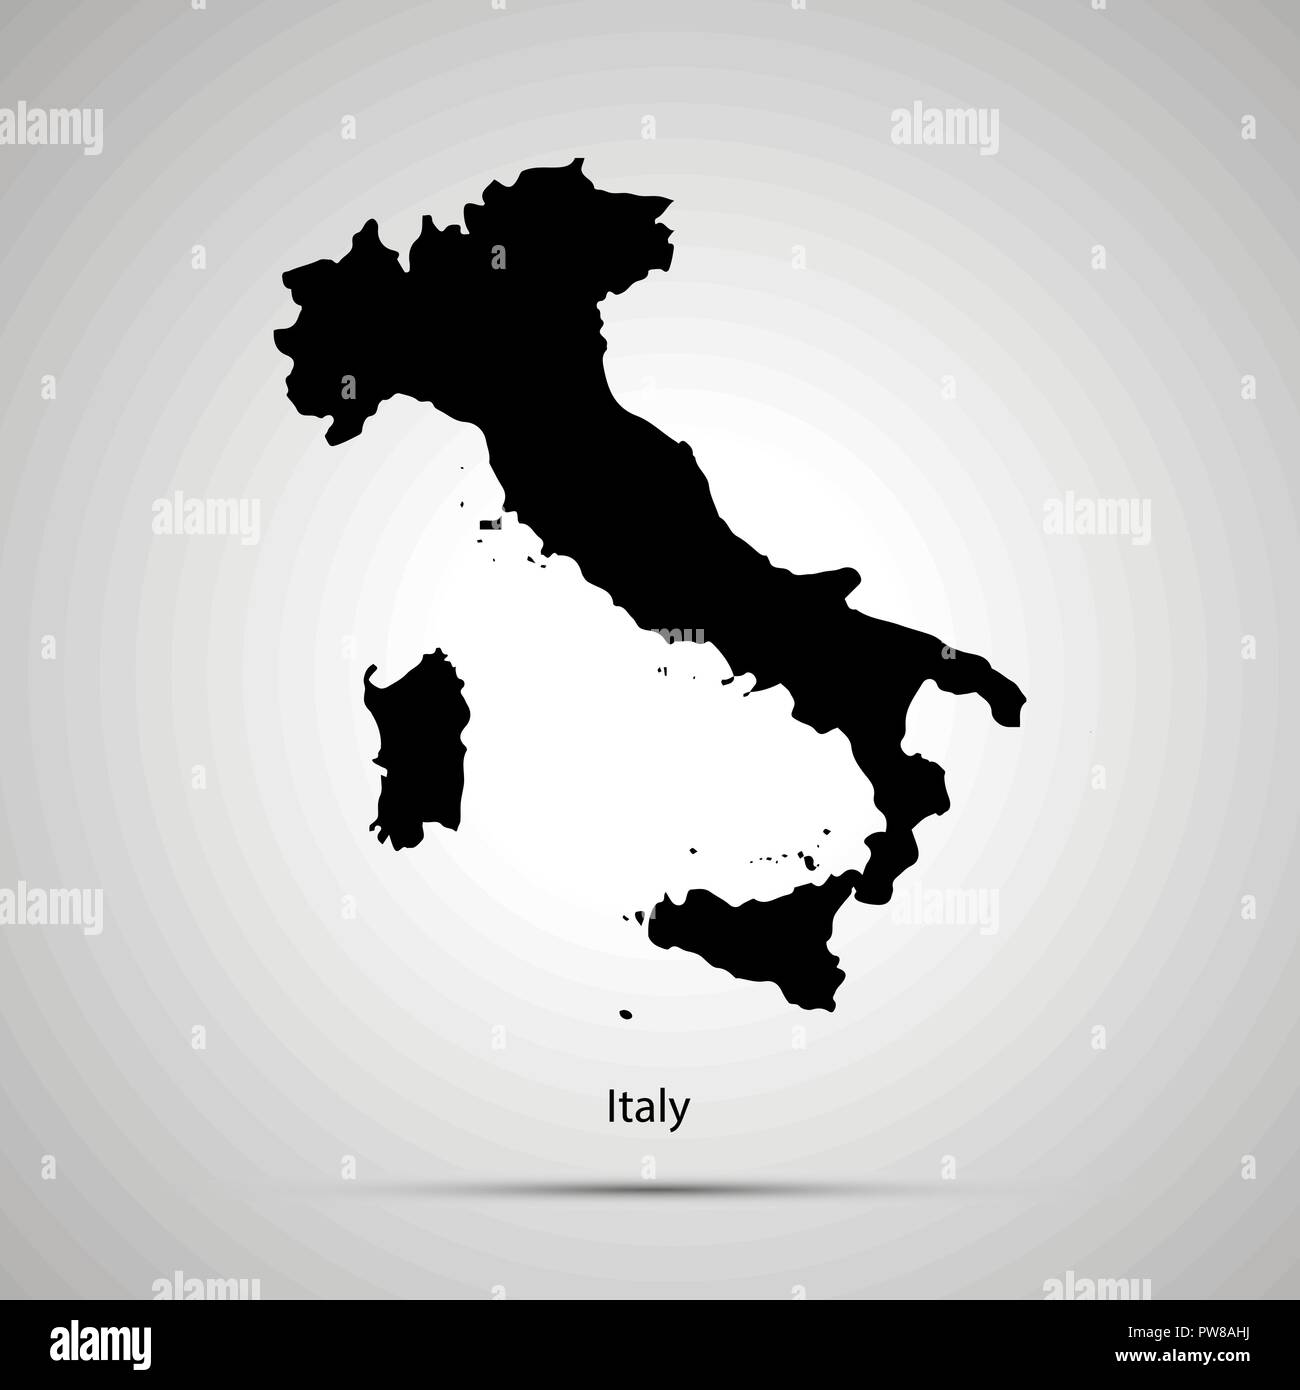 Italia Mapa del país, simple silueta negra sobre fondo gris Ilustración del Vector